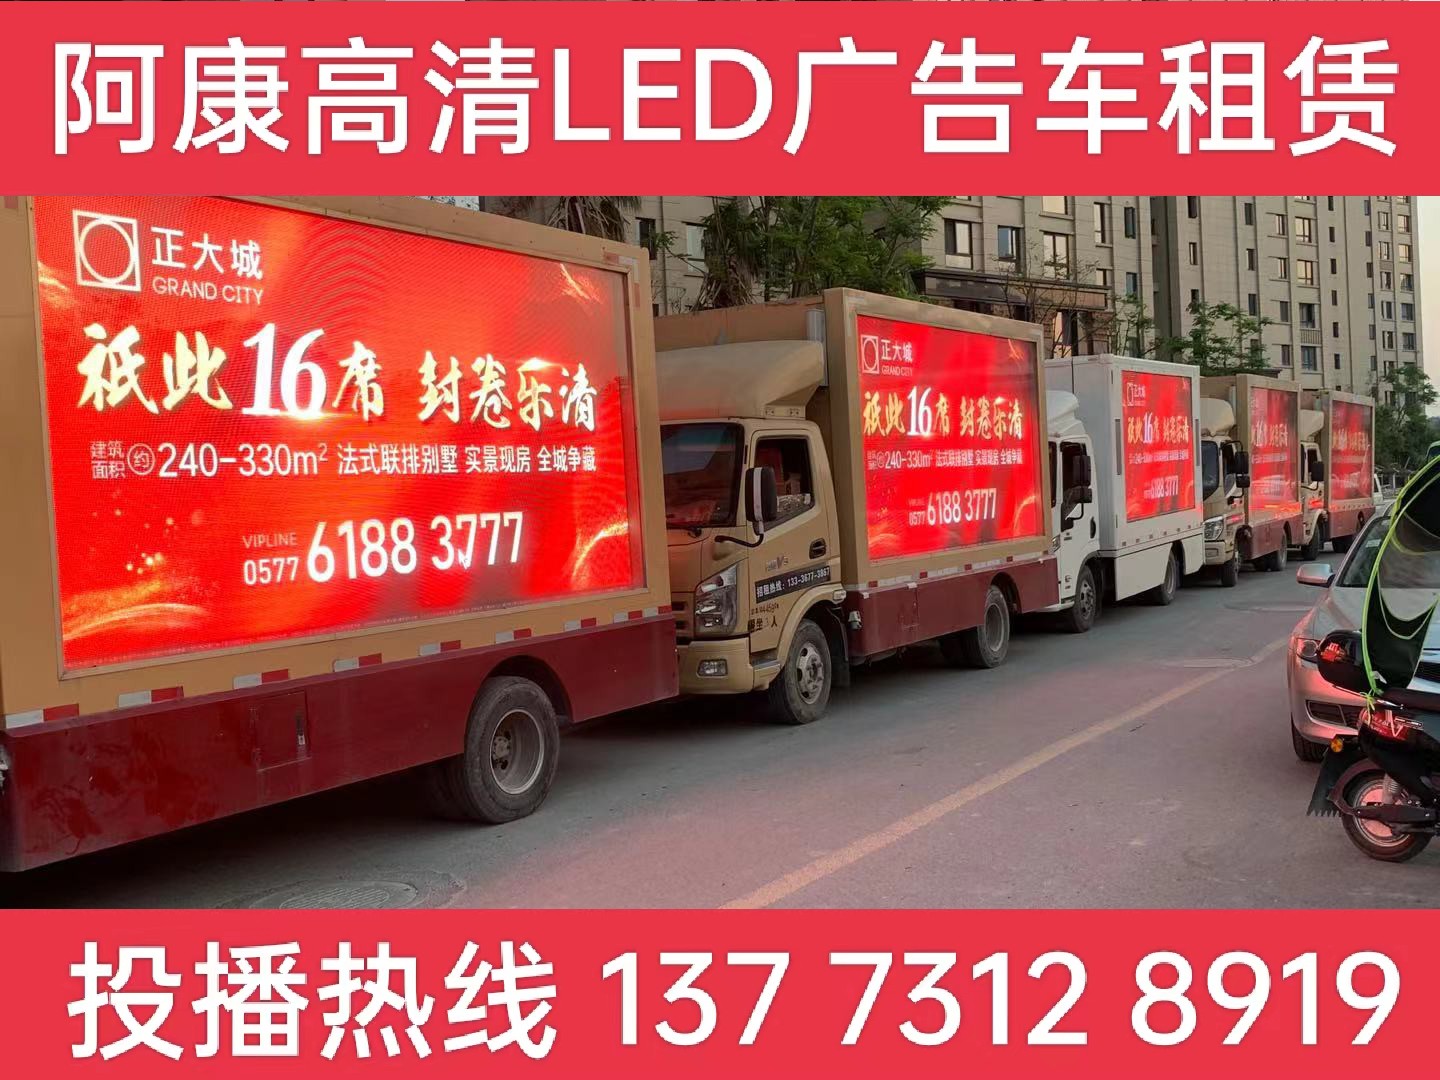 海陵区LED广告车出租